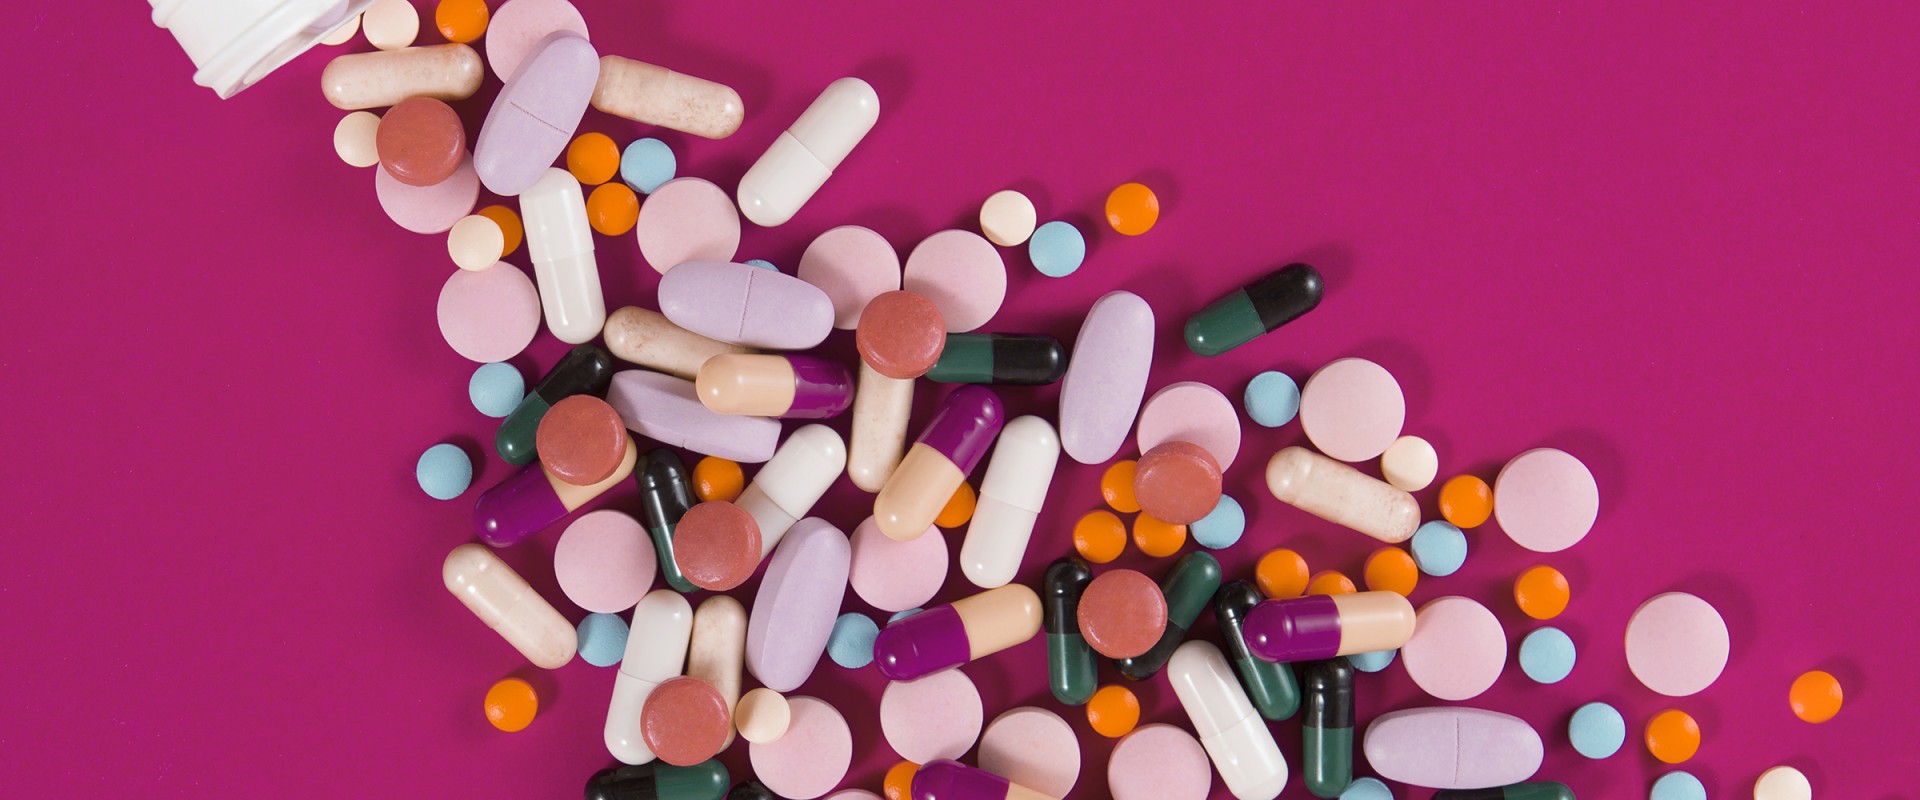 Understanding Interactions Between Supplements and Medications